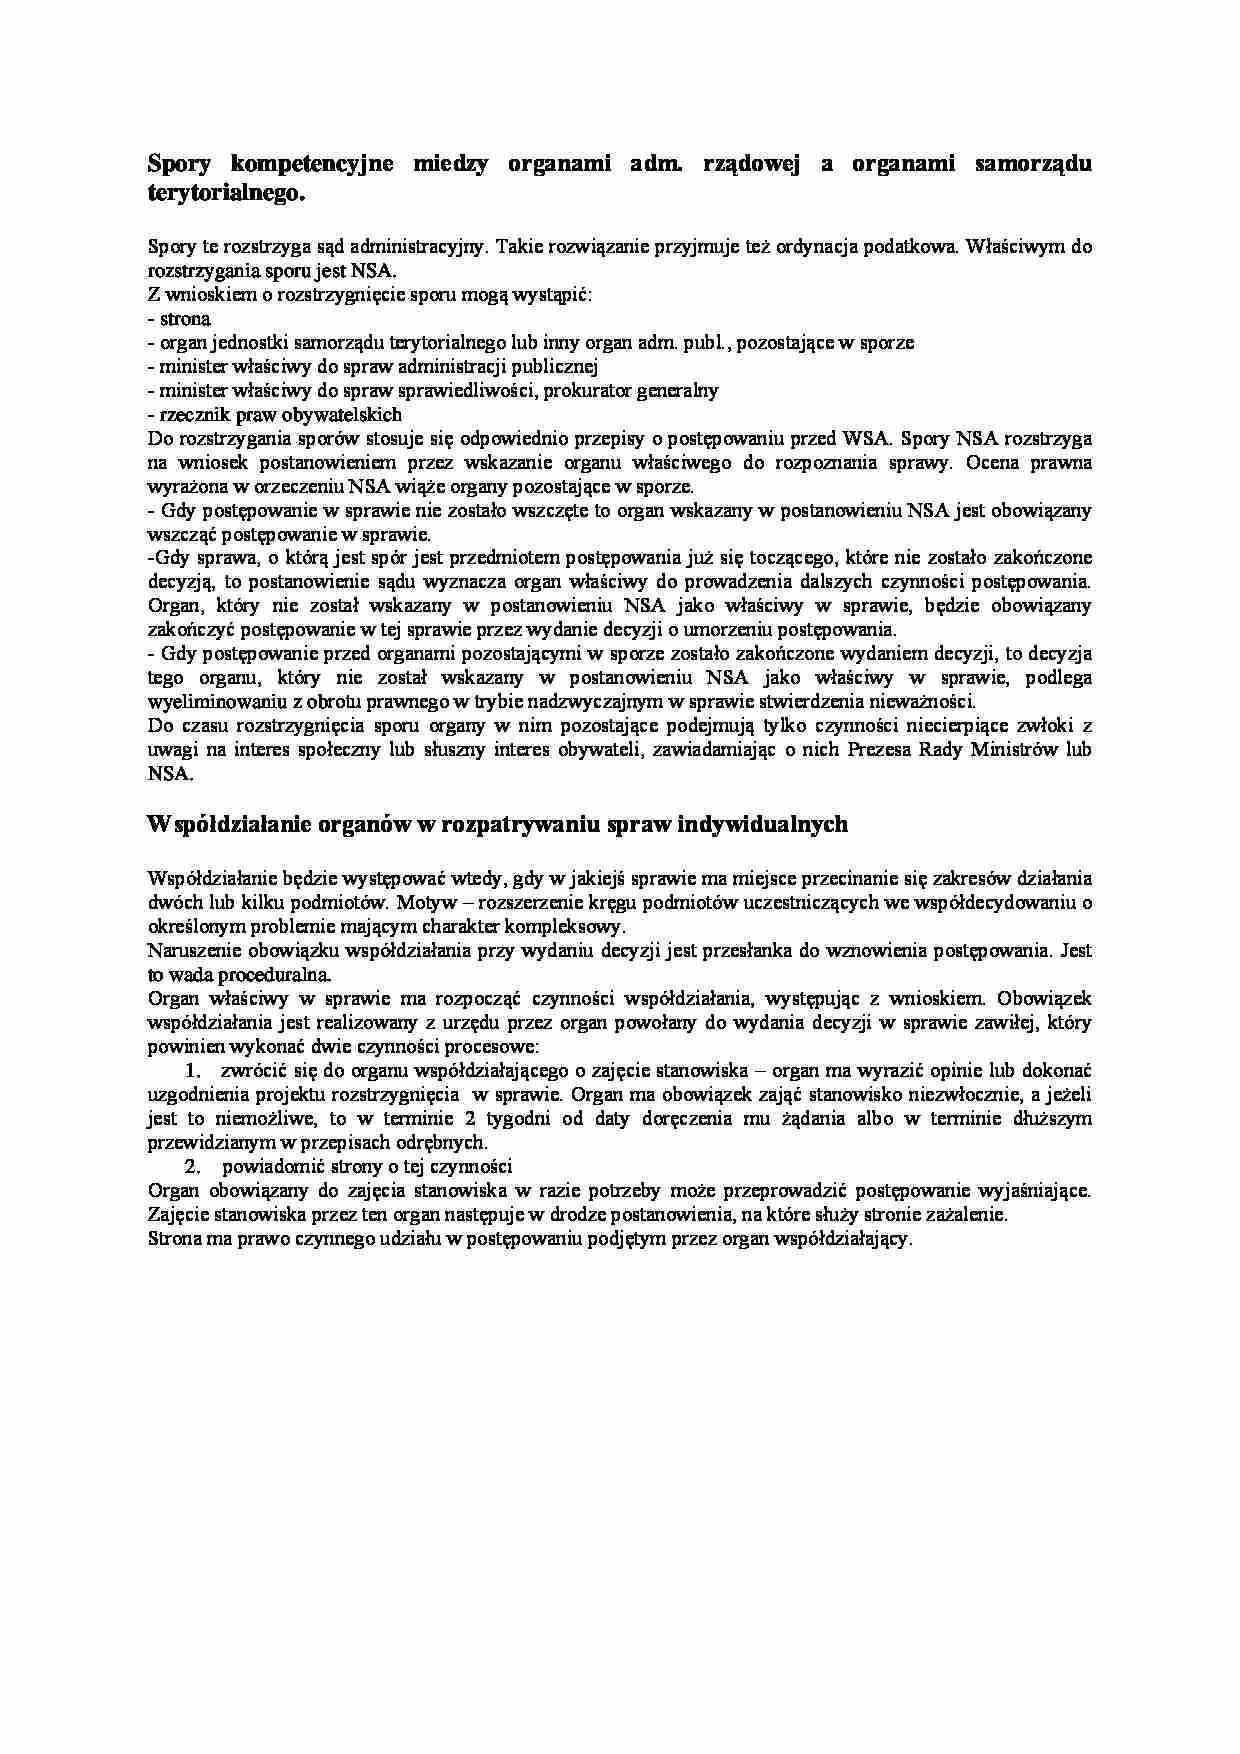 Spory a współdziałanie organów administracji  - strona 1